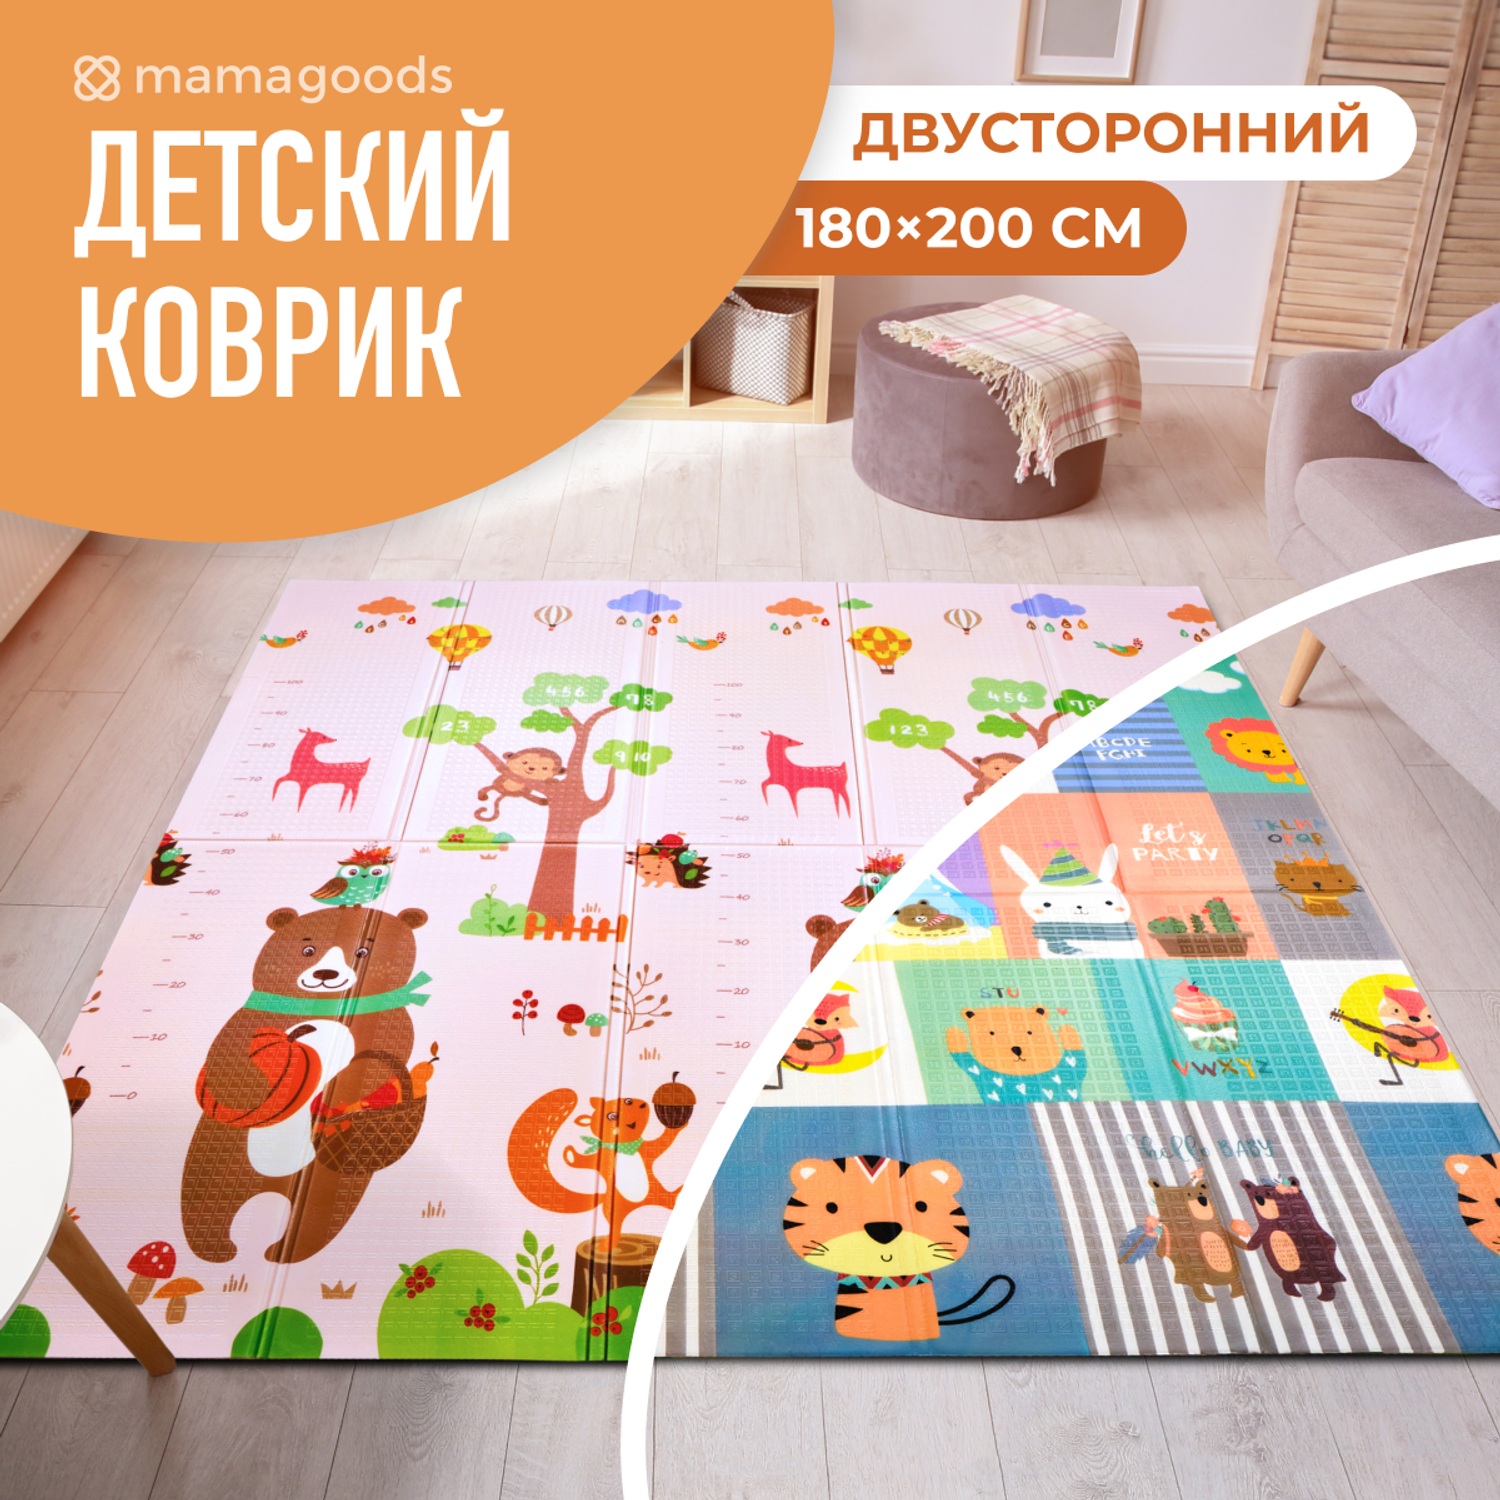 Развивающий коврик детский Mamagoods для ползания складной игровой 180х200 см Медведи и зверята - фото 1